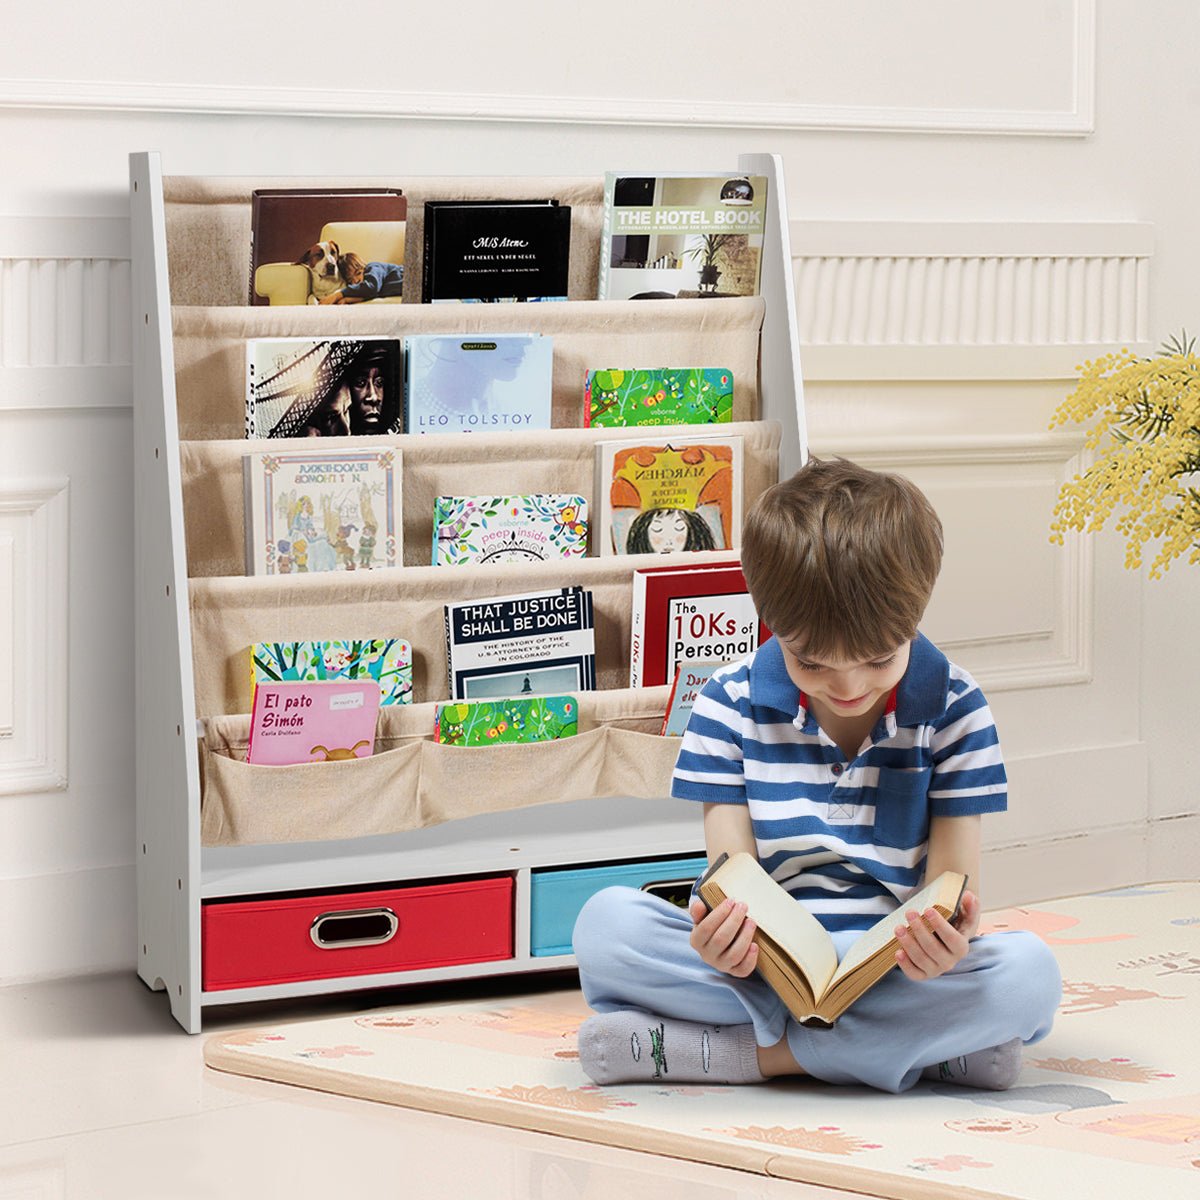 Wood Book Display with Storage - Beige, Keep Books in Order